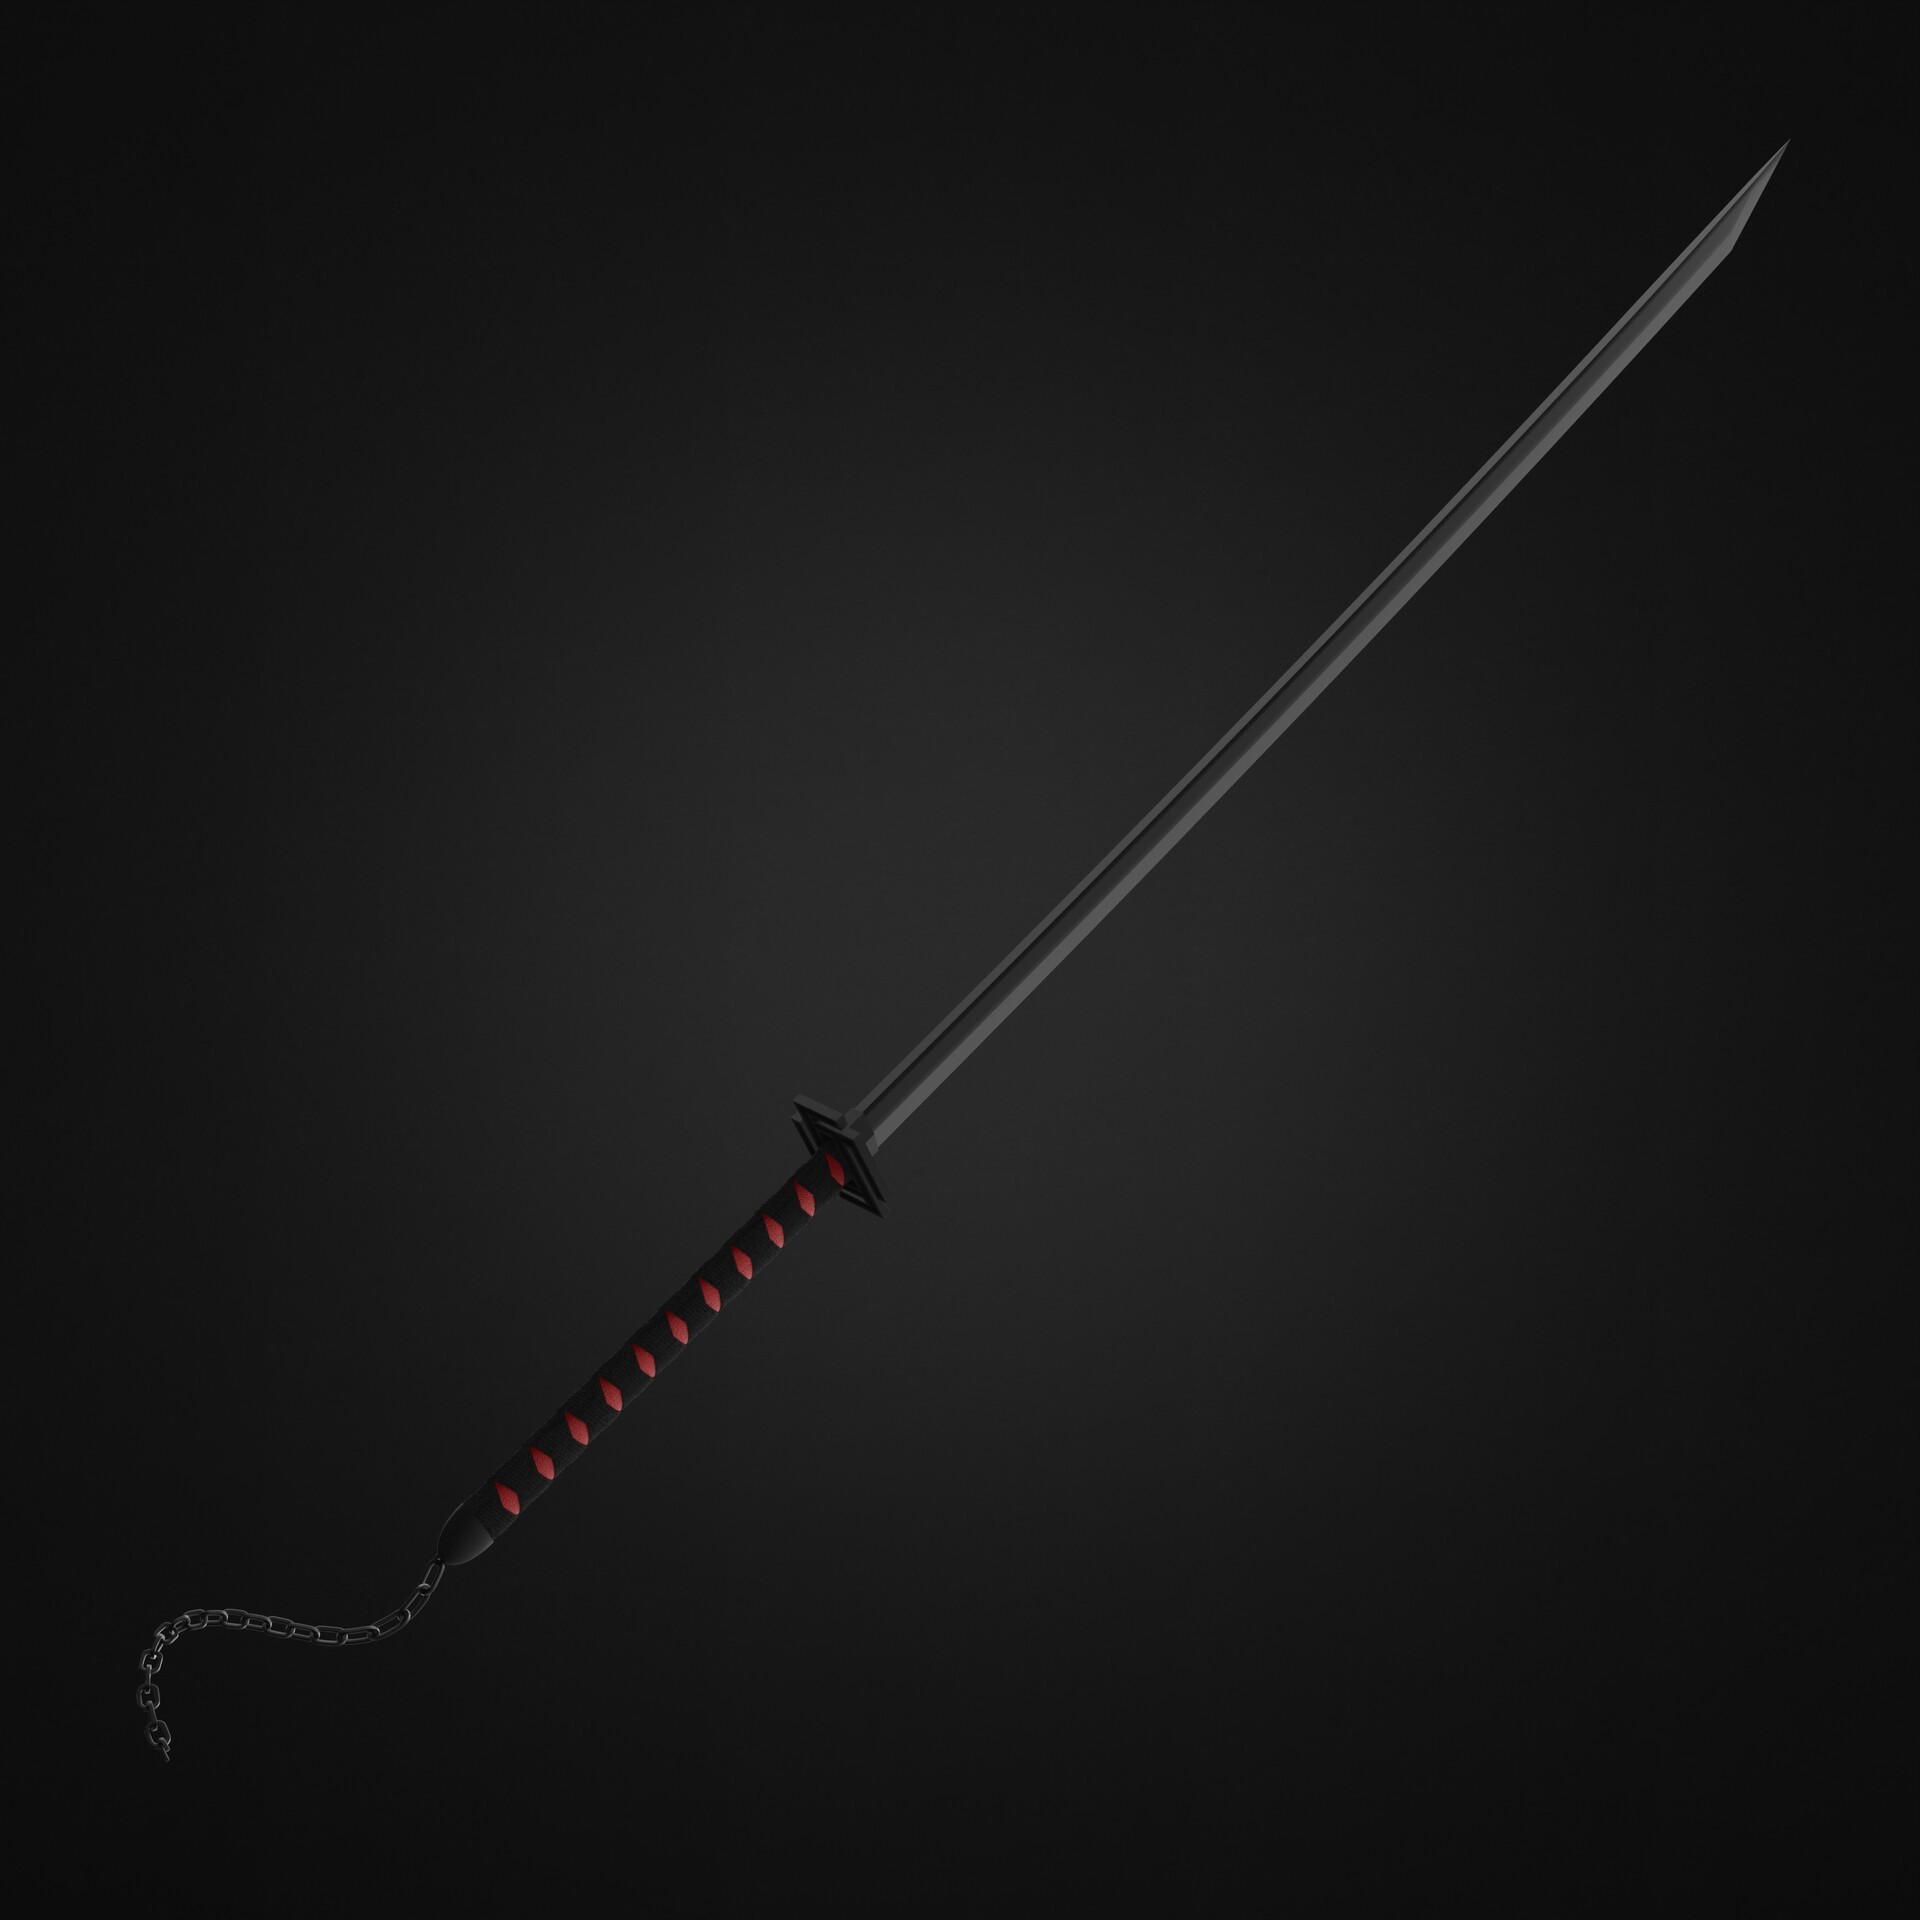 bankai ichigo sword